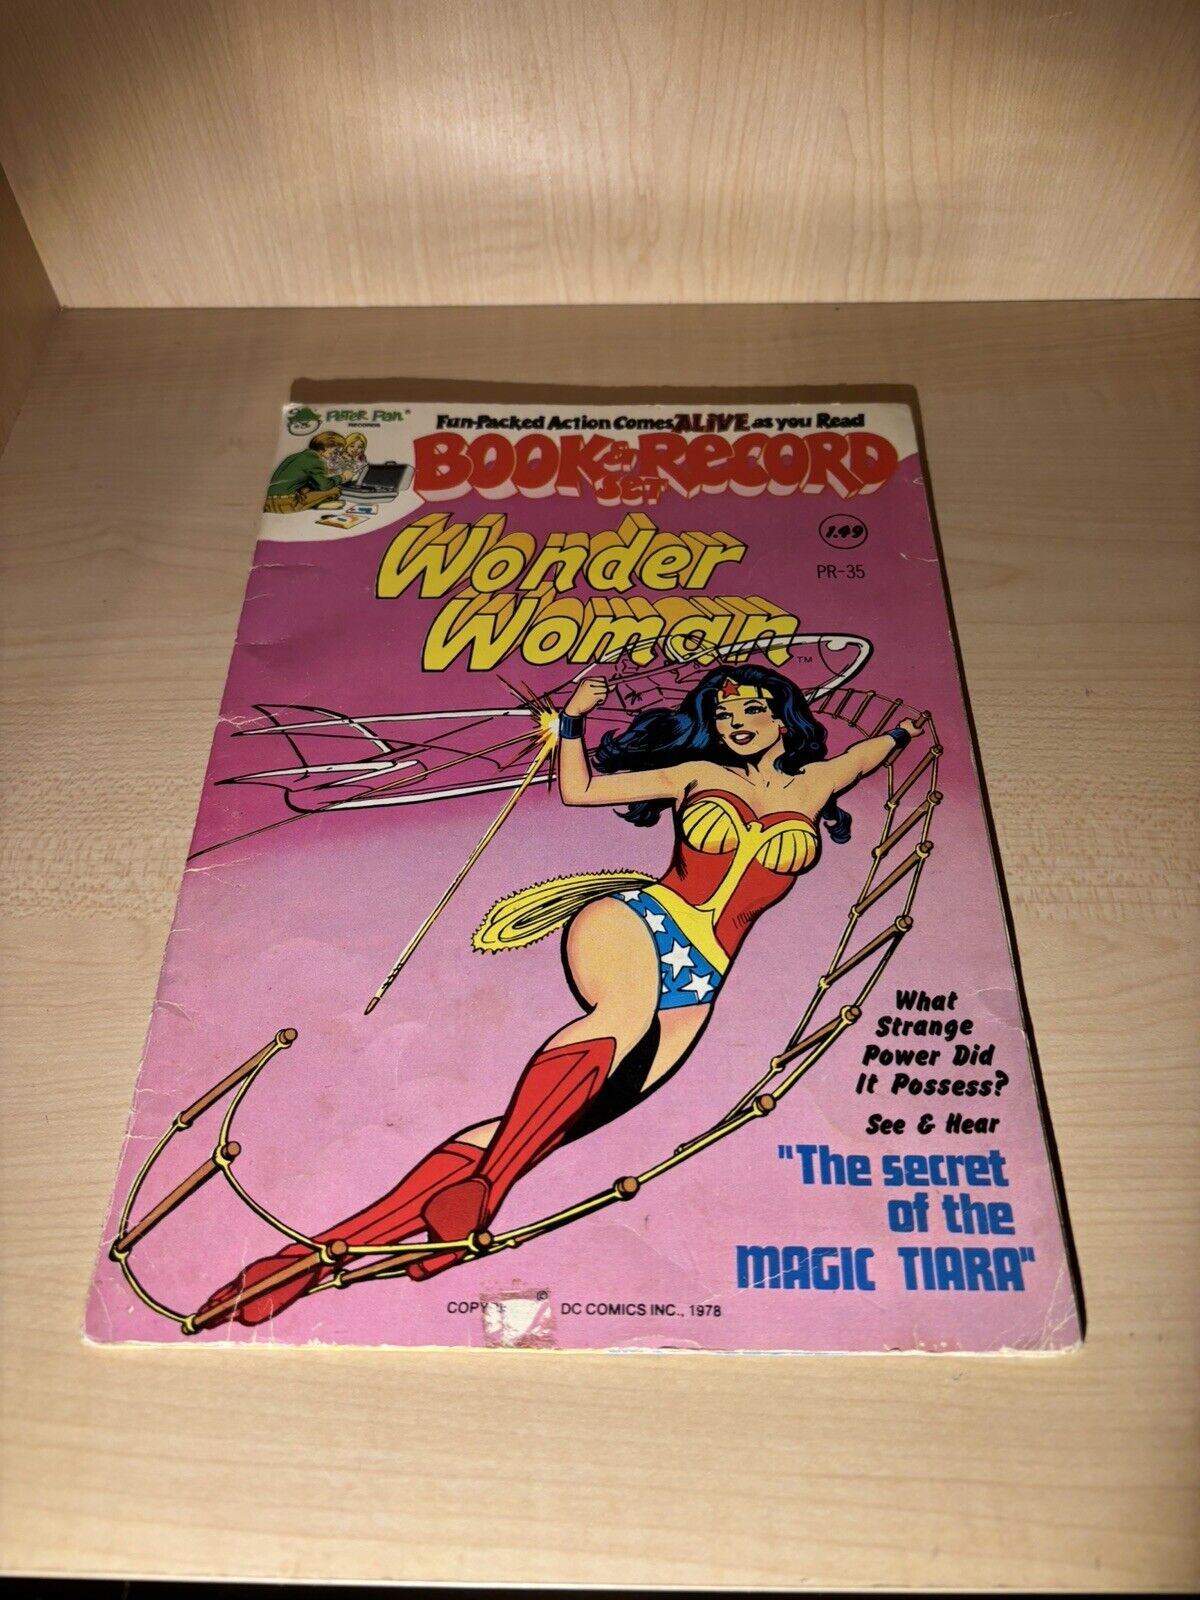 Wonder Woman Comic Book & Record Set The Magic Tiara   Peter Pan DC   1978 PR-35